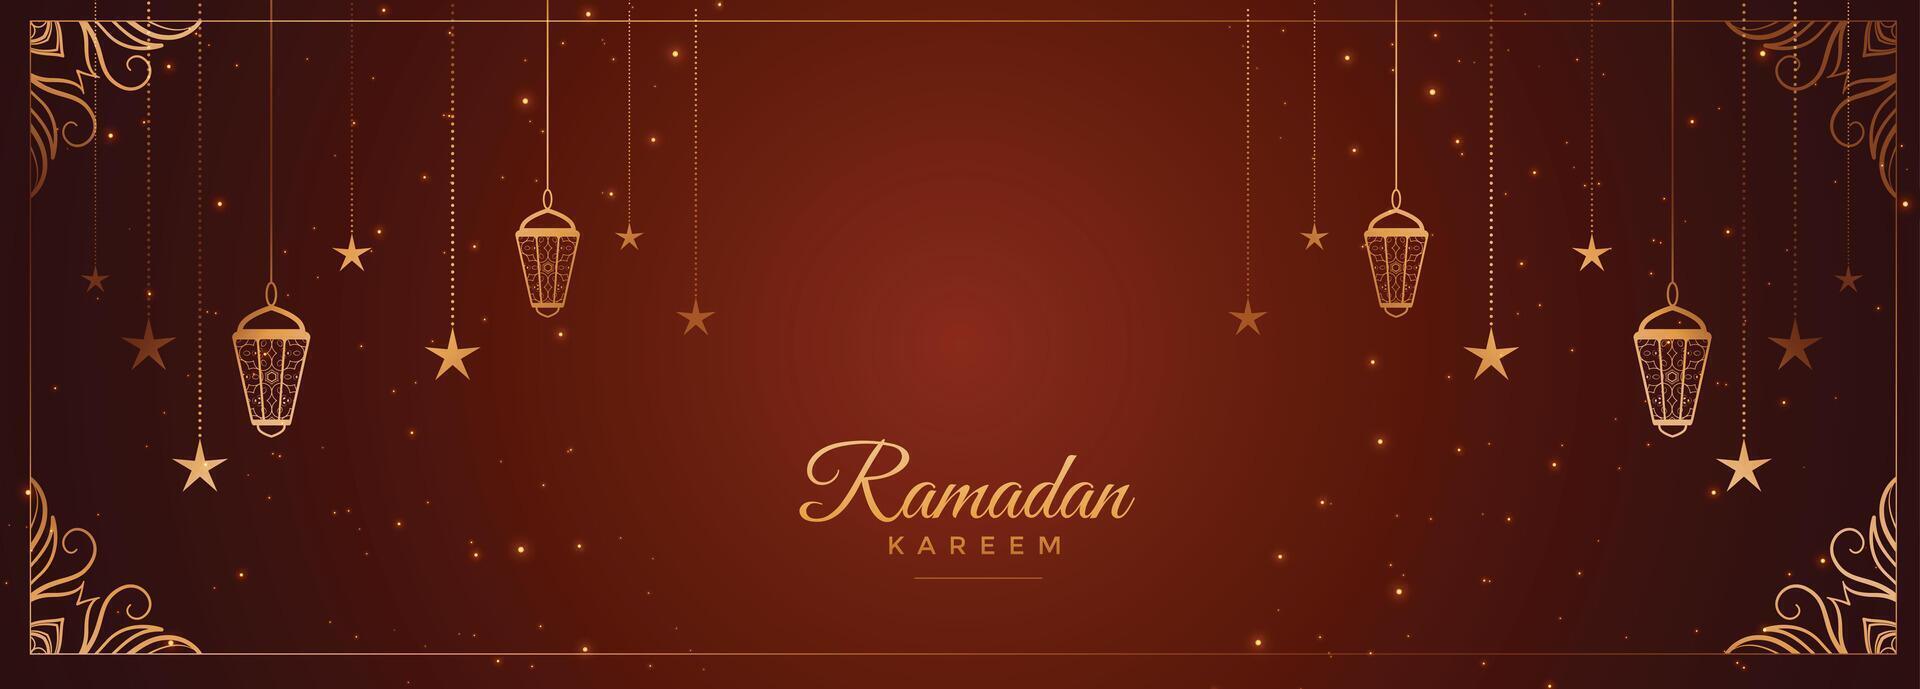 ramadan kareem lyckönskningar baner med arabicum dekoration vektor